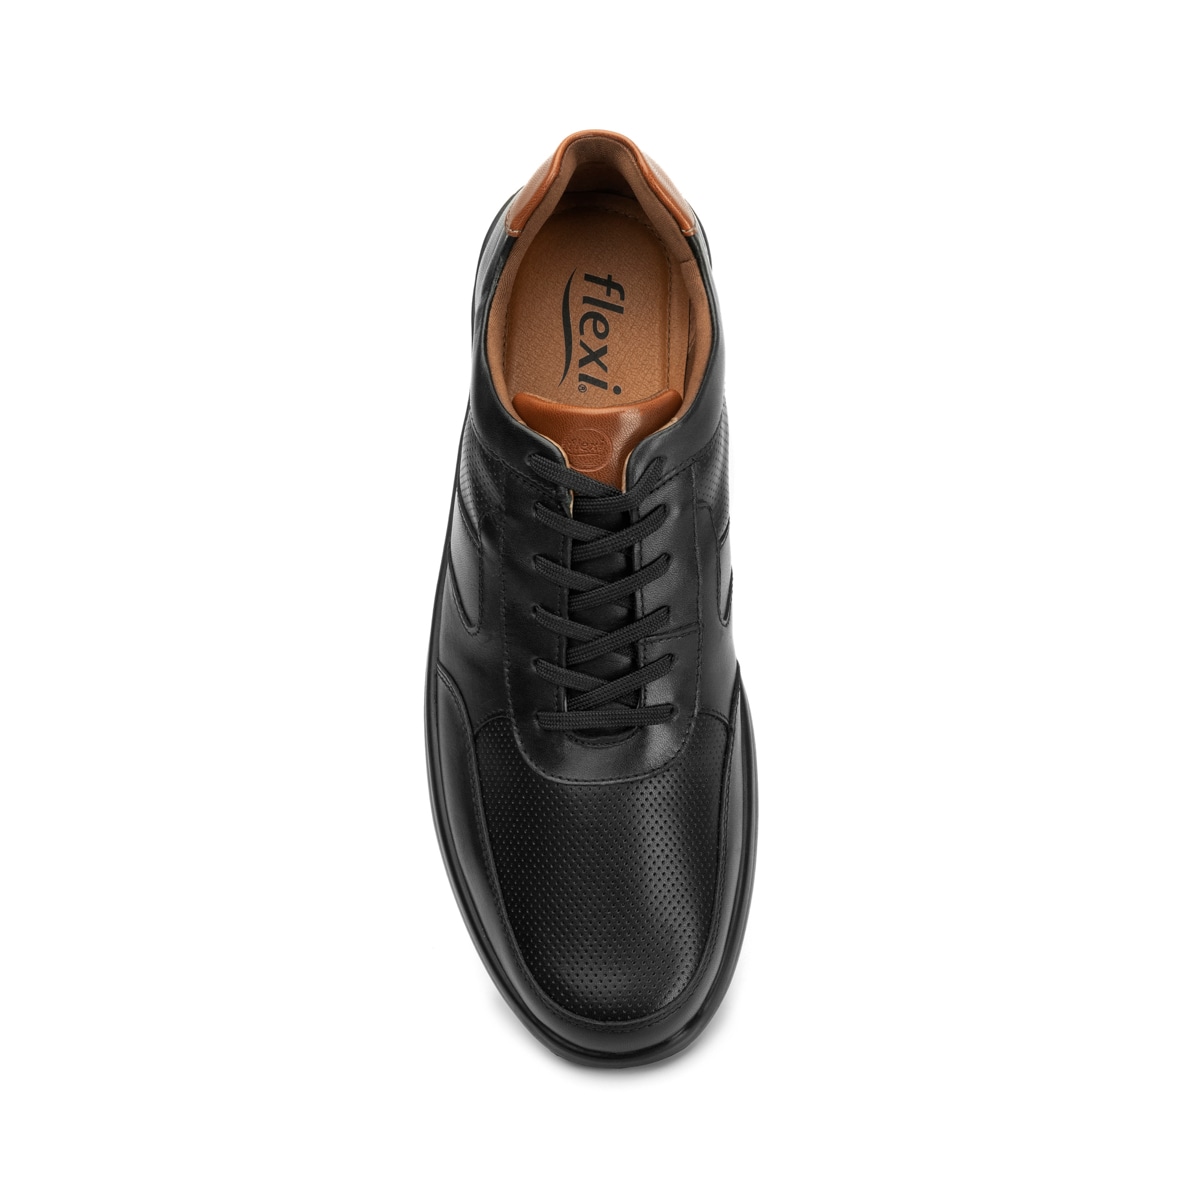 Zapato Vestir Oxford Hombre Negro Piel Flexi 02503826 – SALVAJE